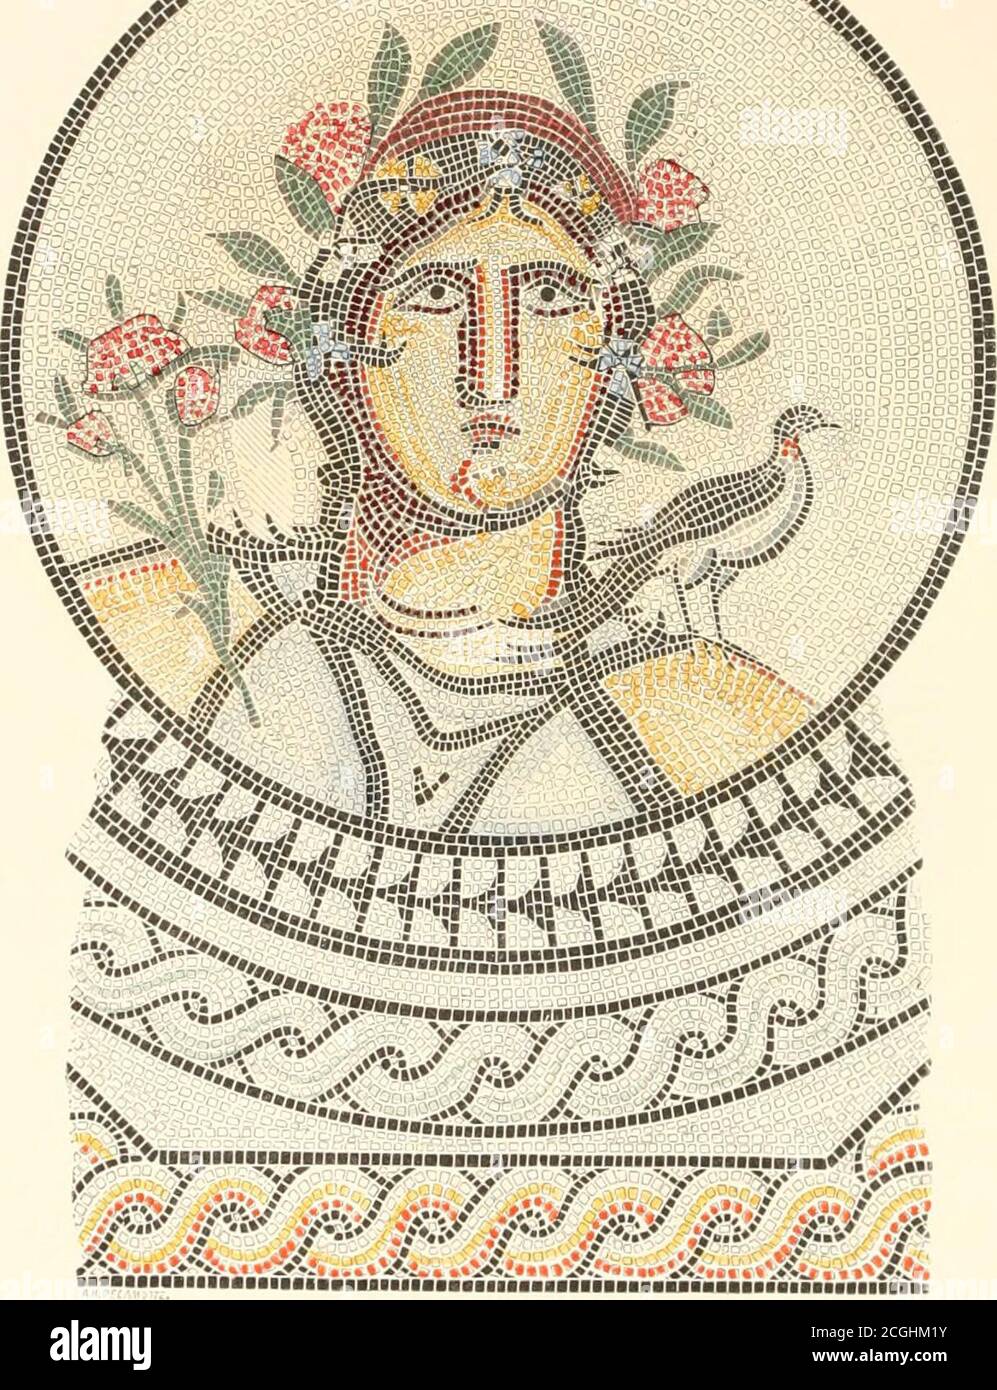 Ilustraciones de los restos de arte romano, en Cirencester, el sitio de la  Corinium antient . Placa V. POQO. FLORA, PAVIMENTOS TESELADOS OP COEINITJM.  43 A. Flora, Plate v. una cabeza